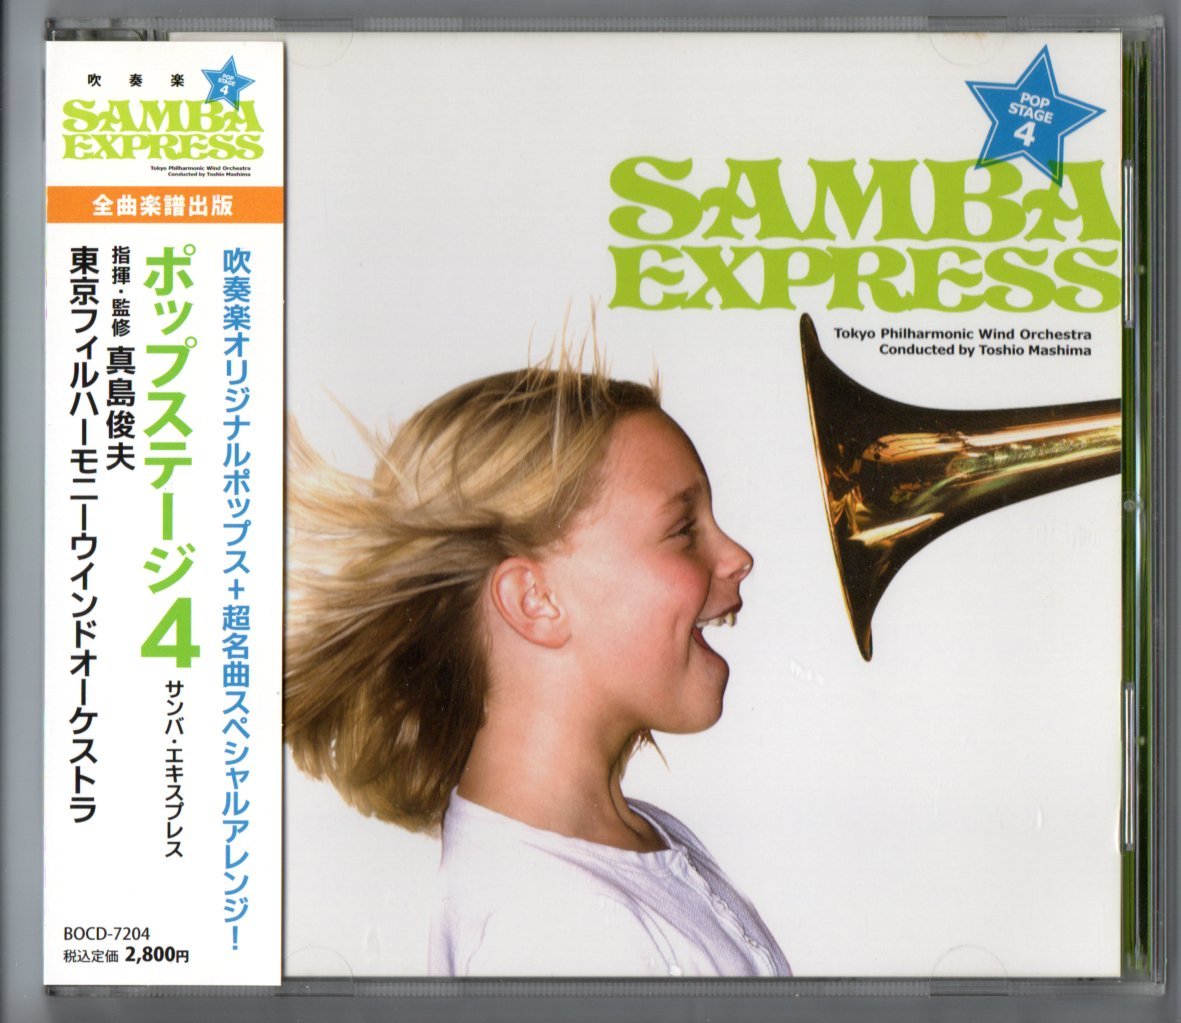 送料無料 吹奏楽CD ポップステージ4 サンバ・エキスプレス トワイライト・イン・アッパー・ウエスト フライ・ハイ ダッタン人の踊り_画像1